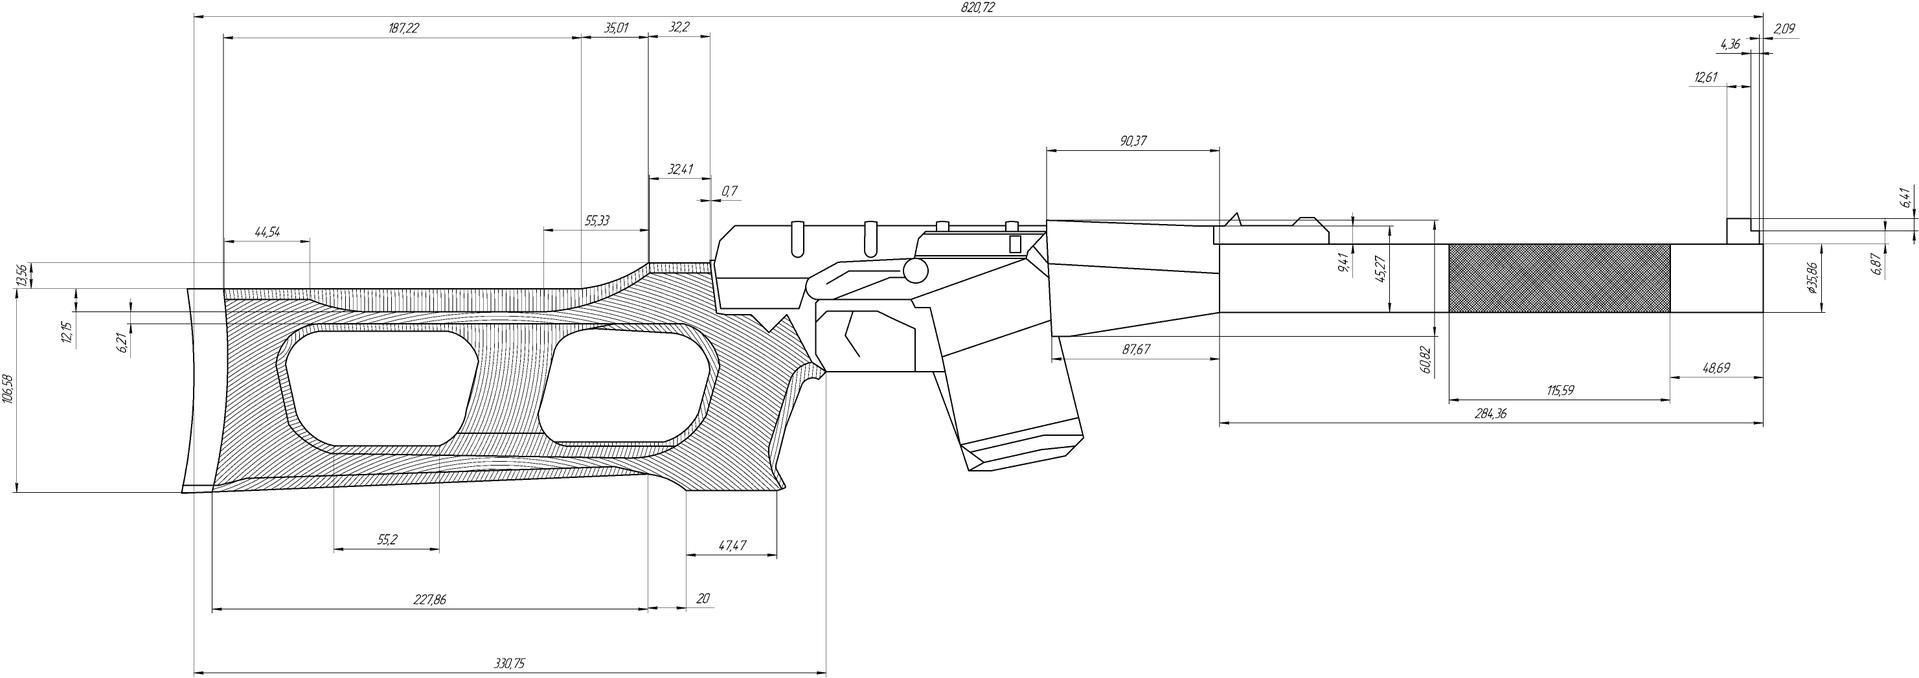 снайперская винтовка awp чертеж фото 52